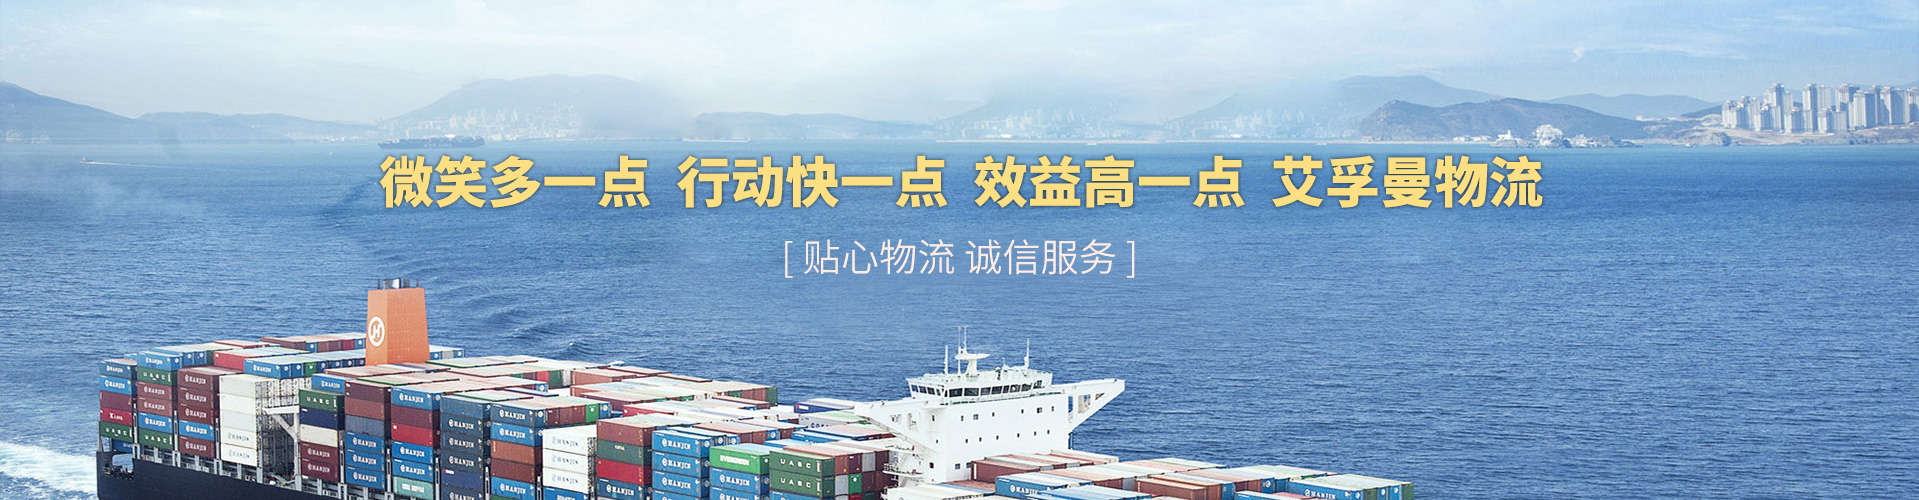 宁夏进口流程 货运商检 申请的方案